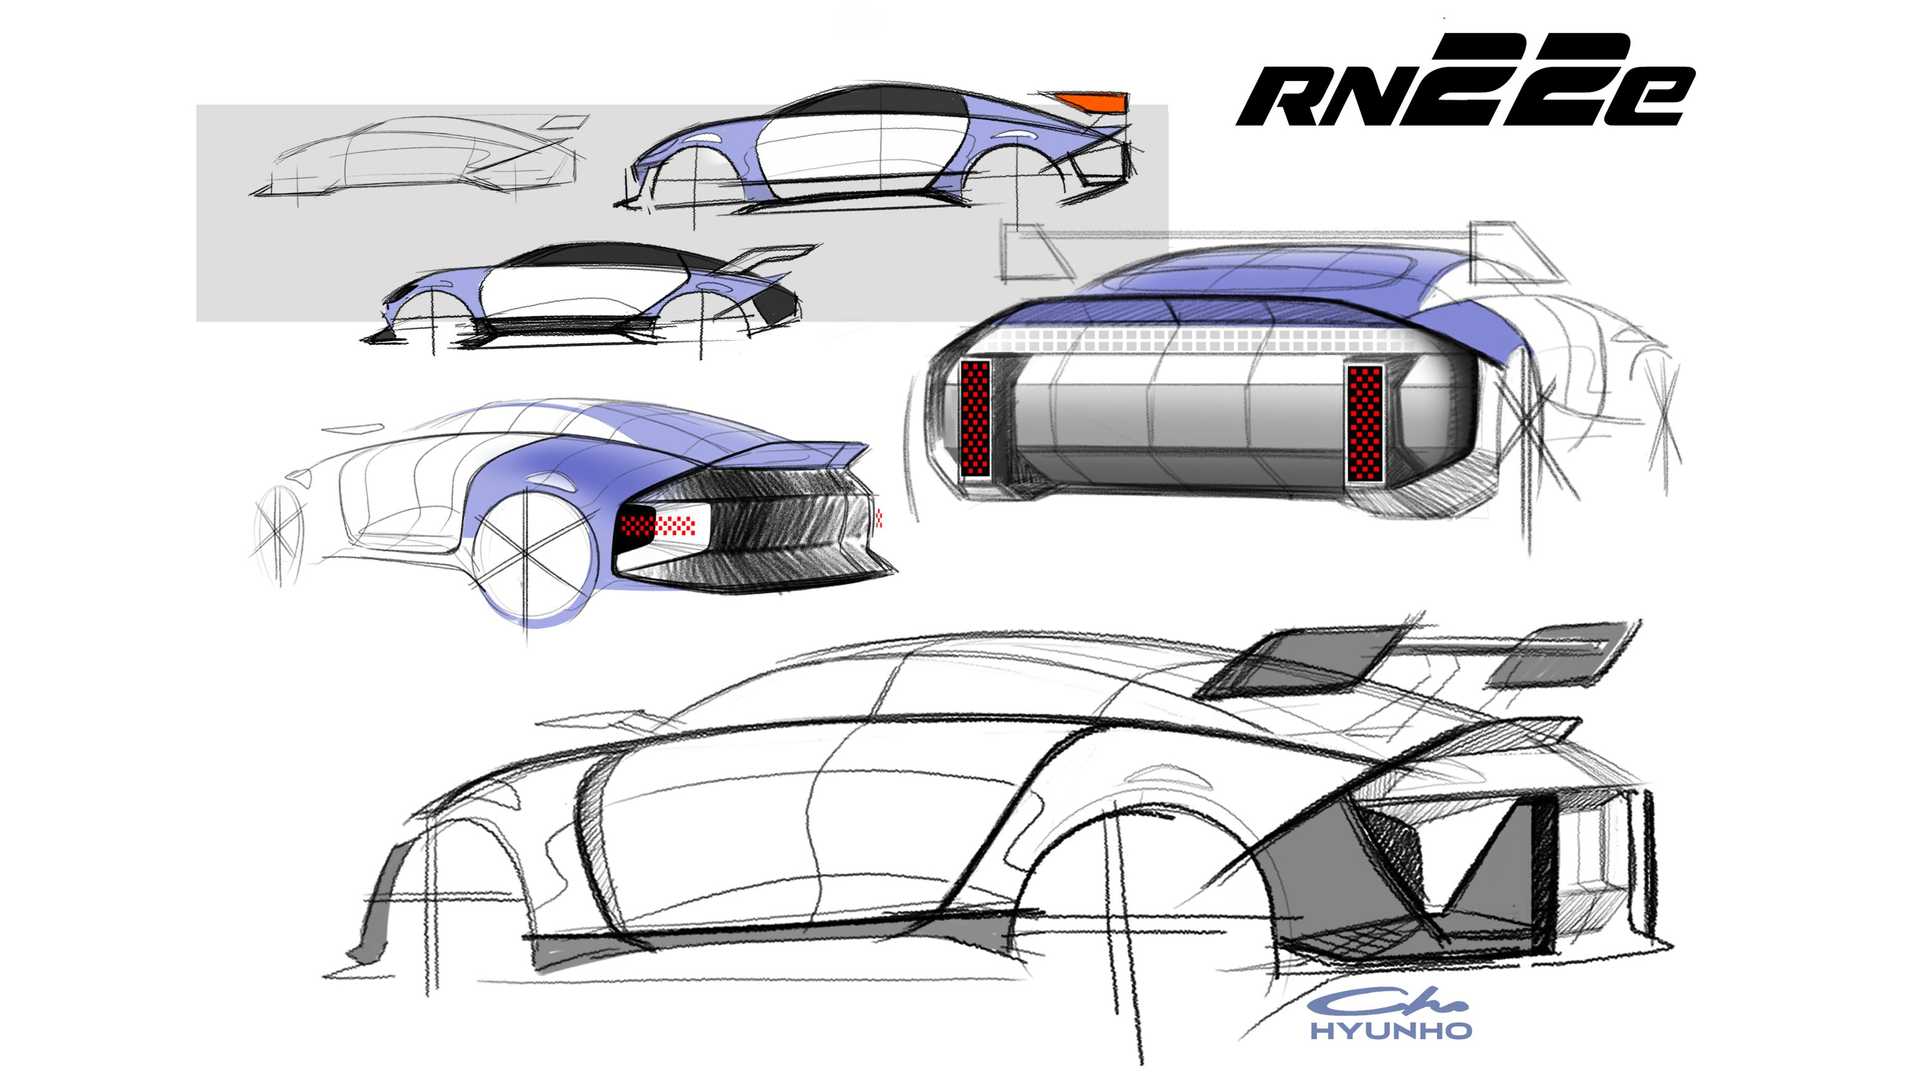 Imagen Diseño Hyundai RN22e